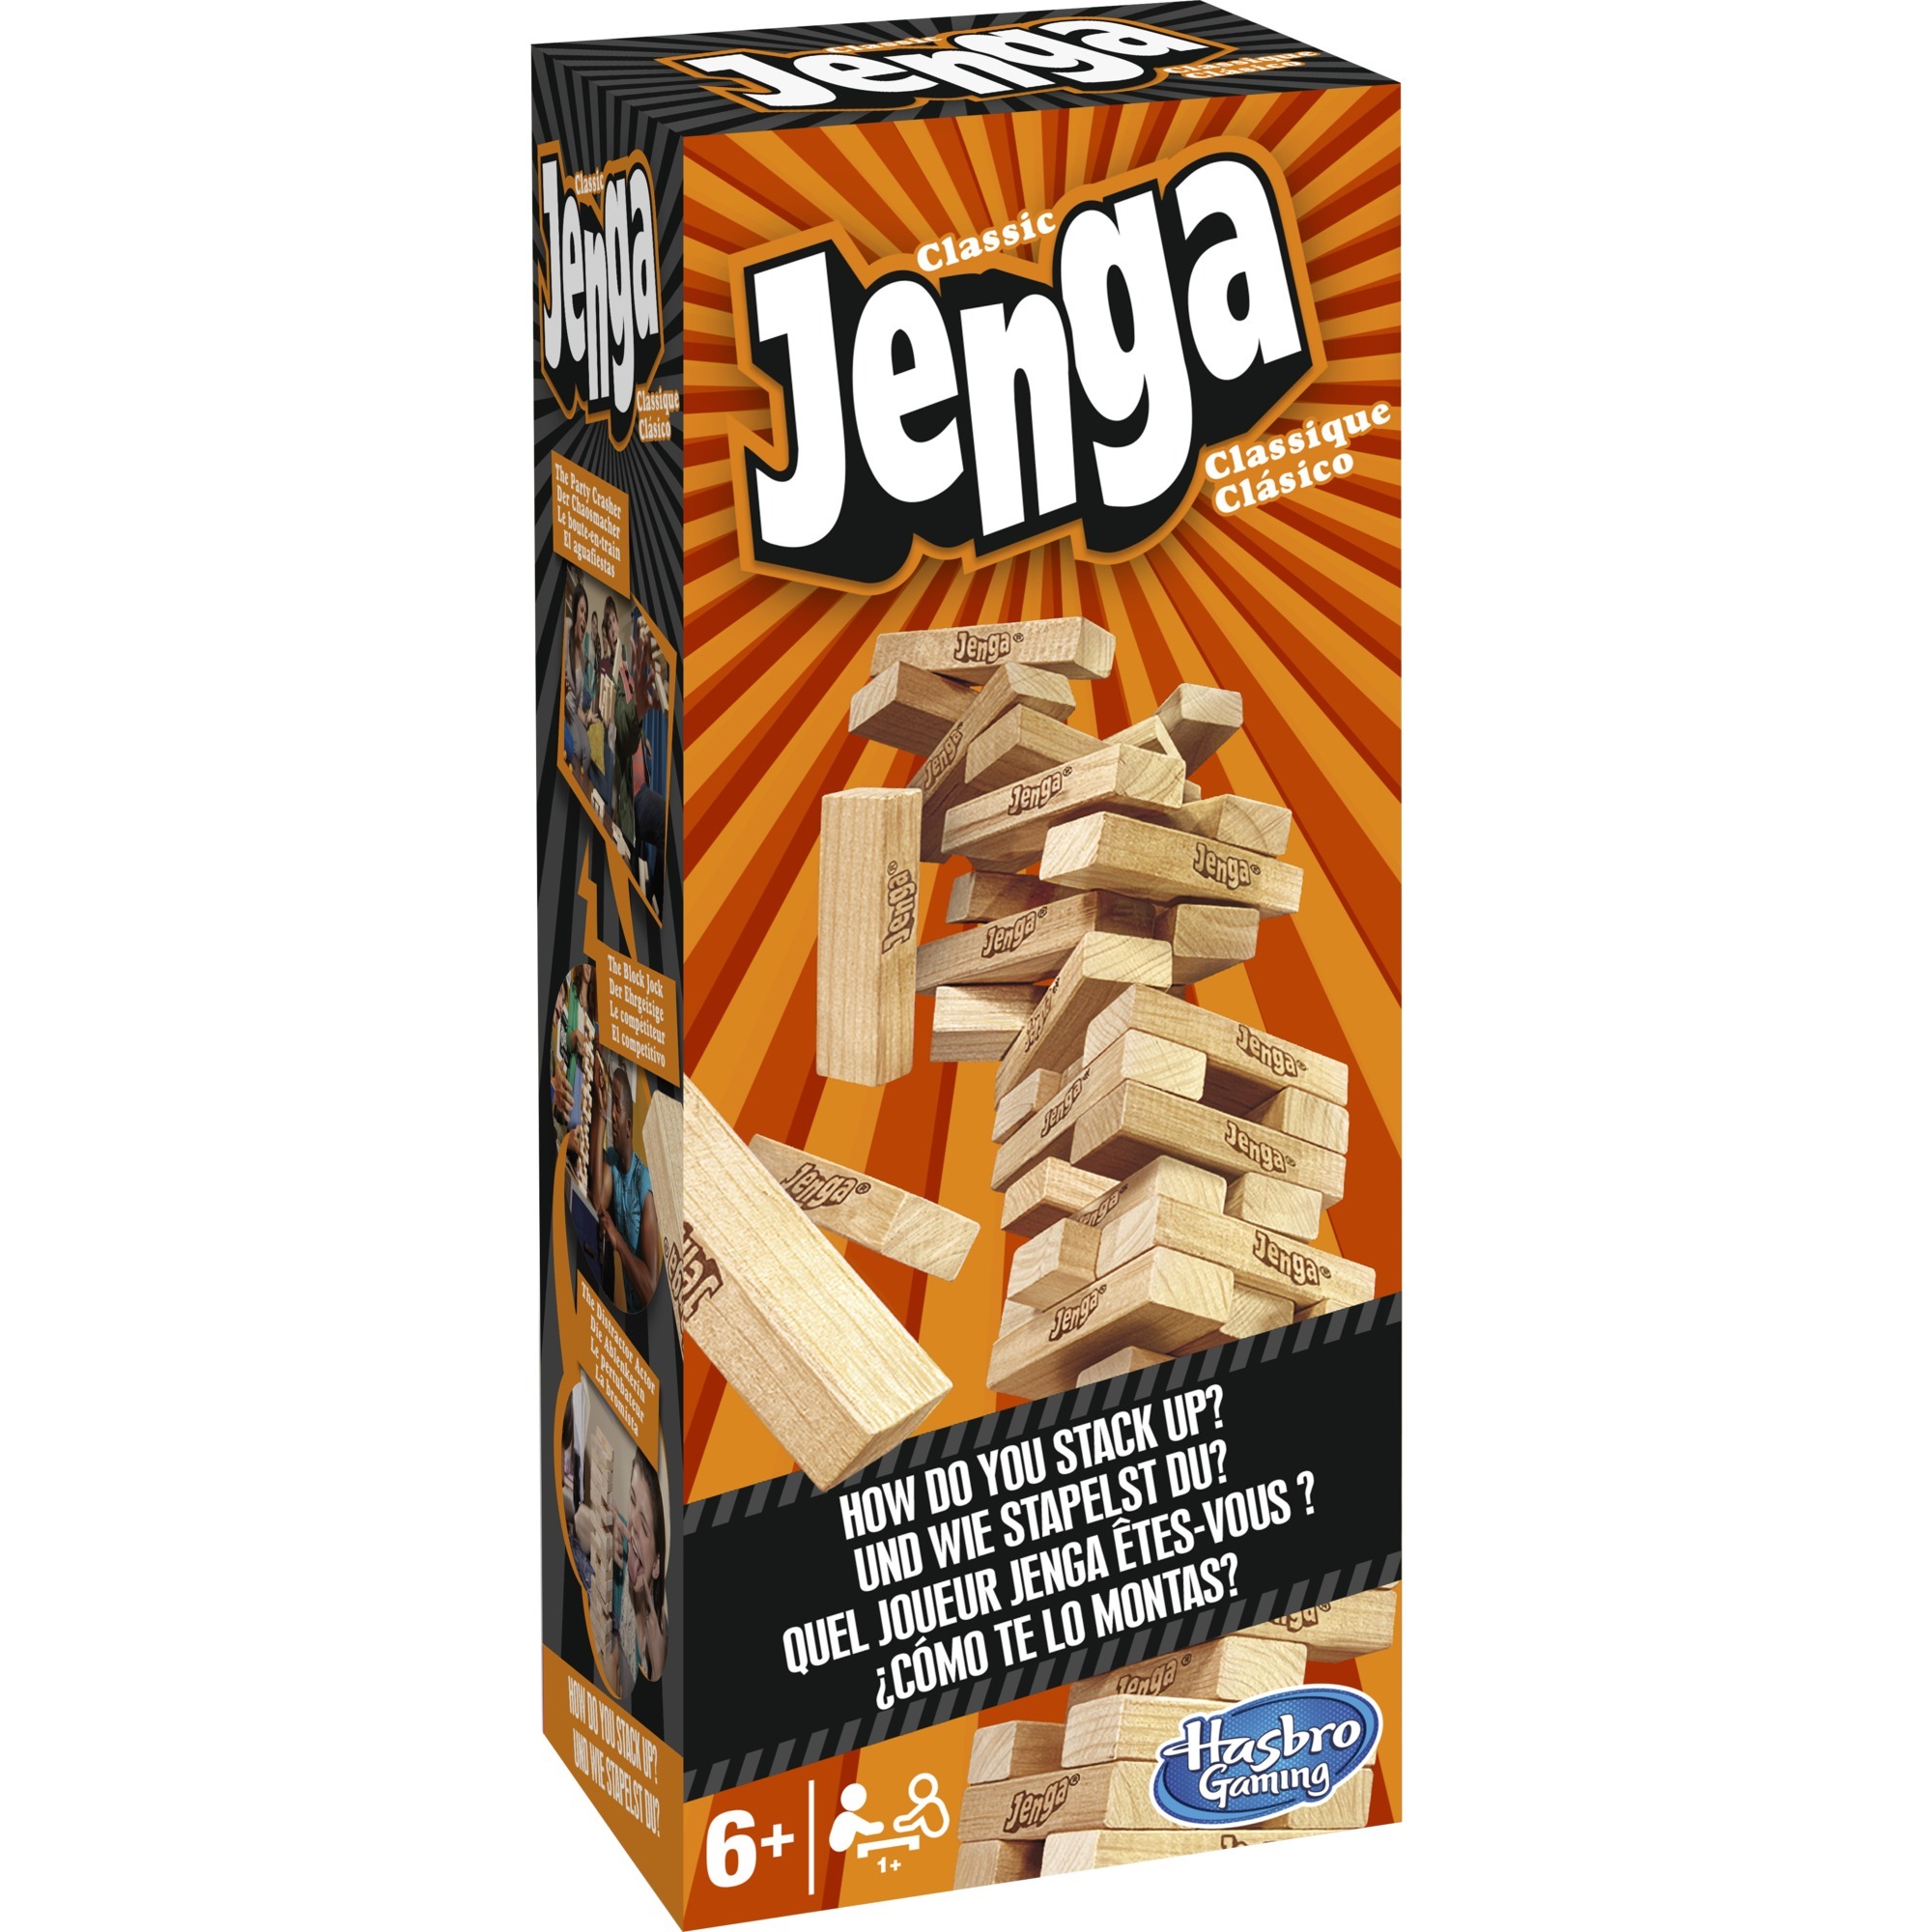 Image of Alternate - Jenga Classic, Geschicklichkeitsspiel online einkaufen bei Alternate